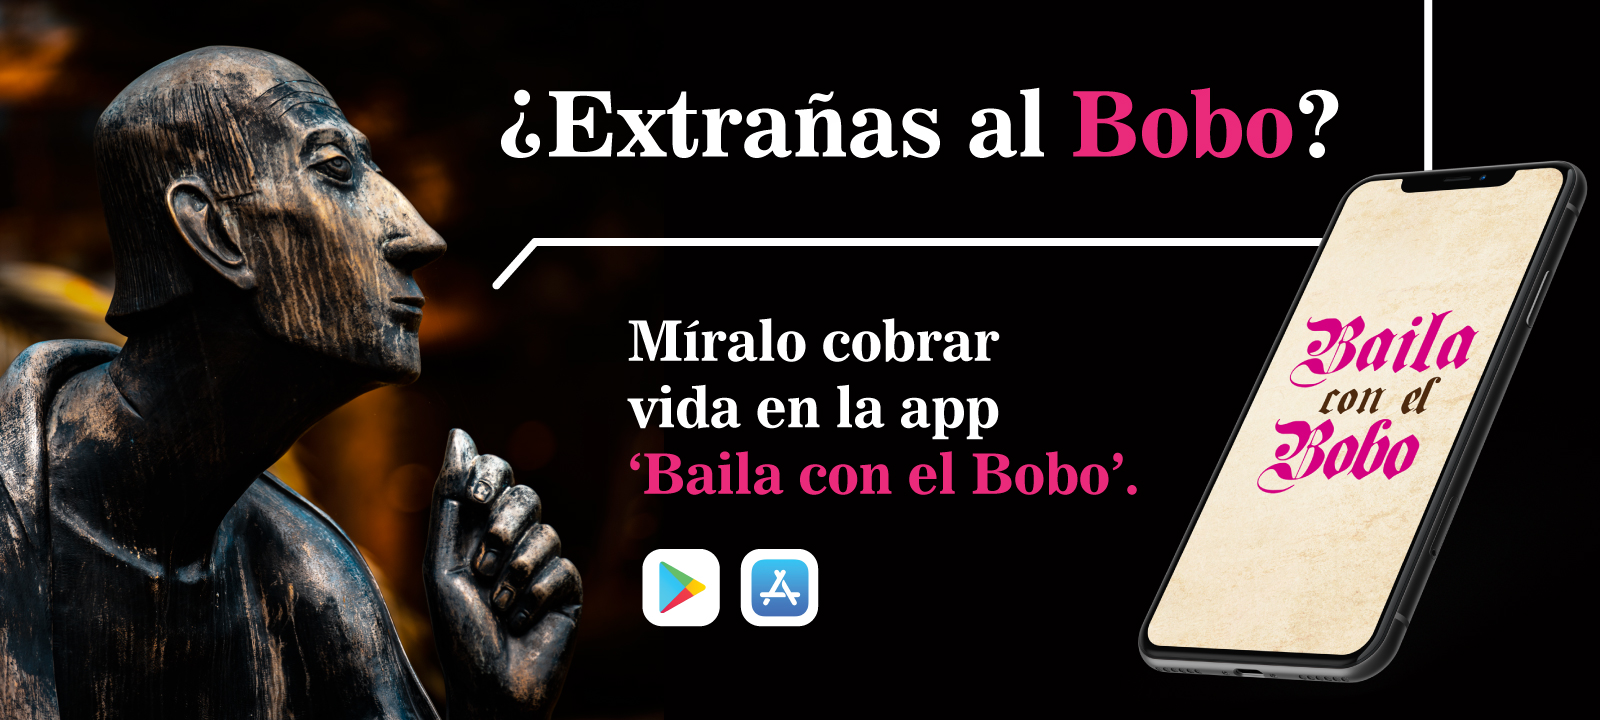 App 'Baila con el Bobo' - Universidad de los Andes